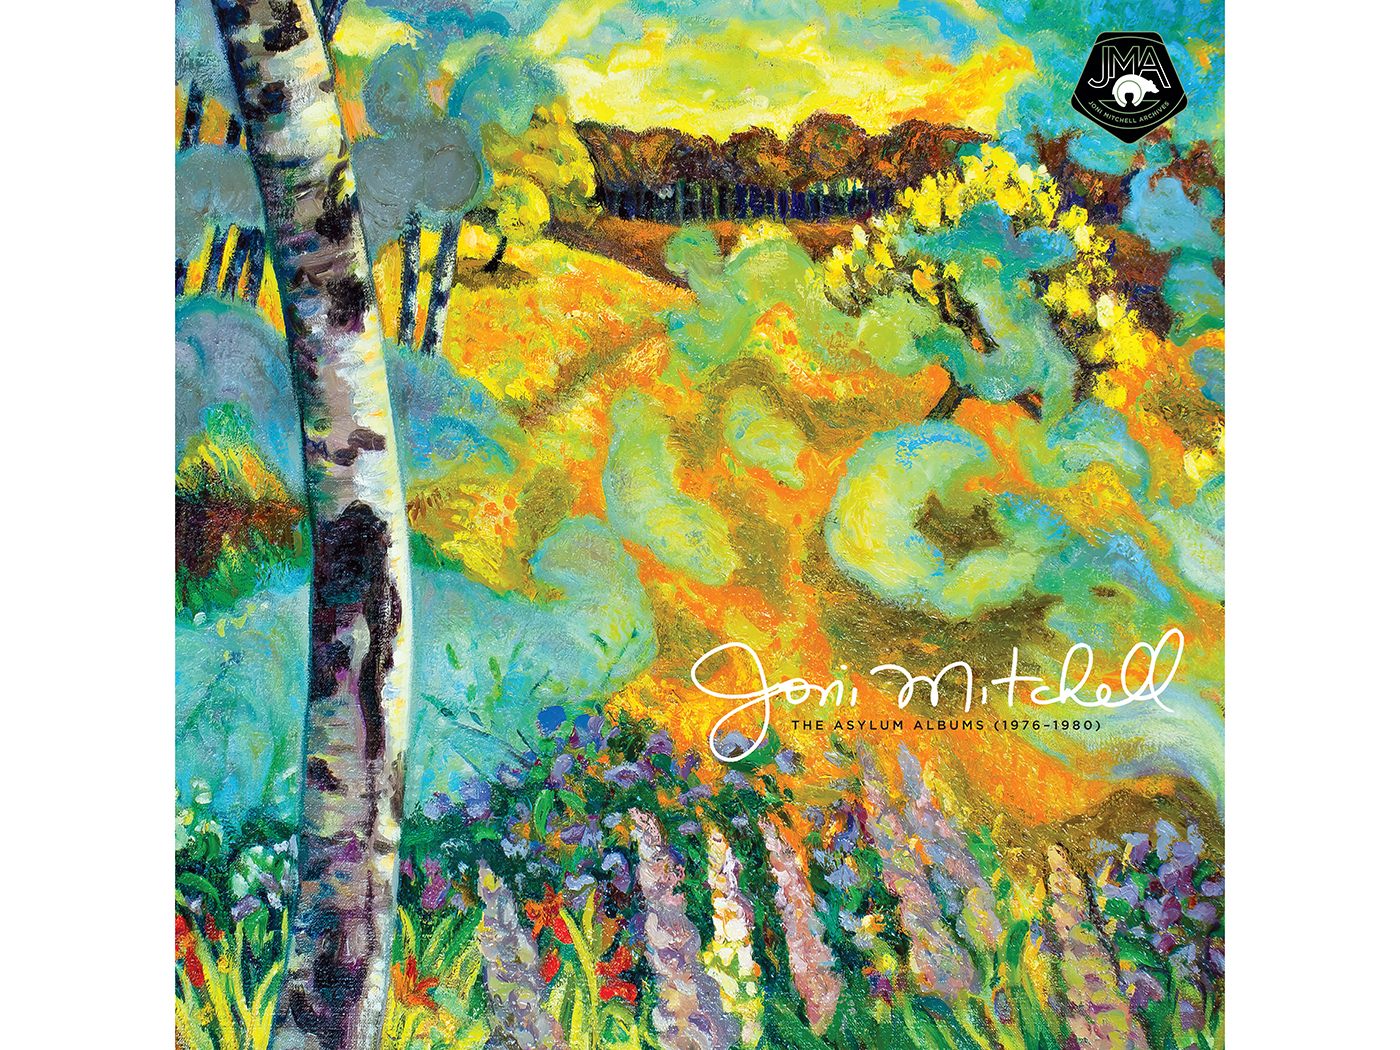 Écoutez une version remasterisée de « Coyote » de The Asylum Albums de Joni Mitchell (1976-1980)